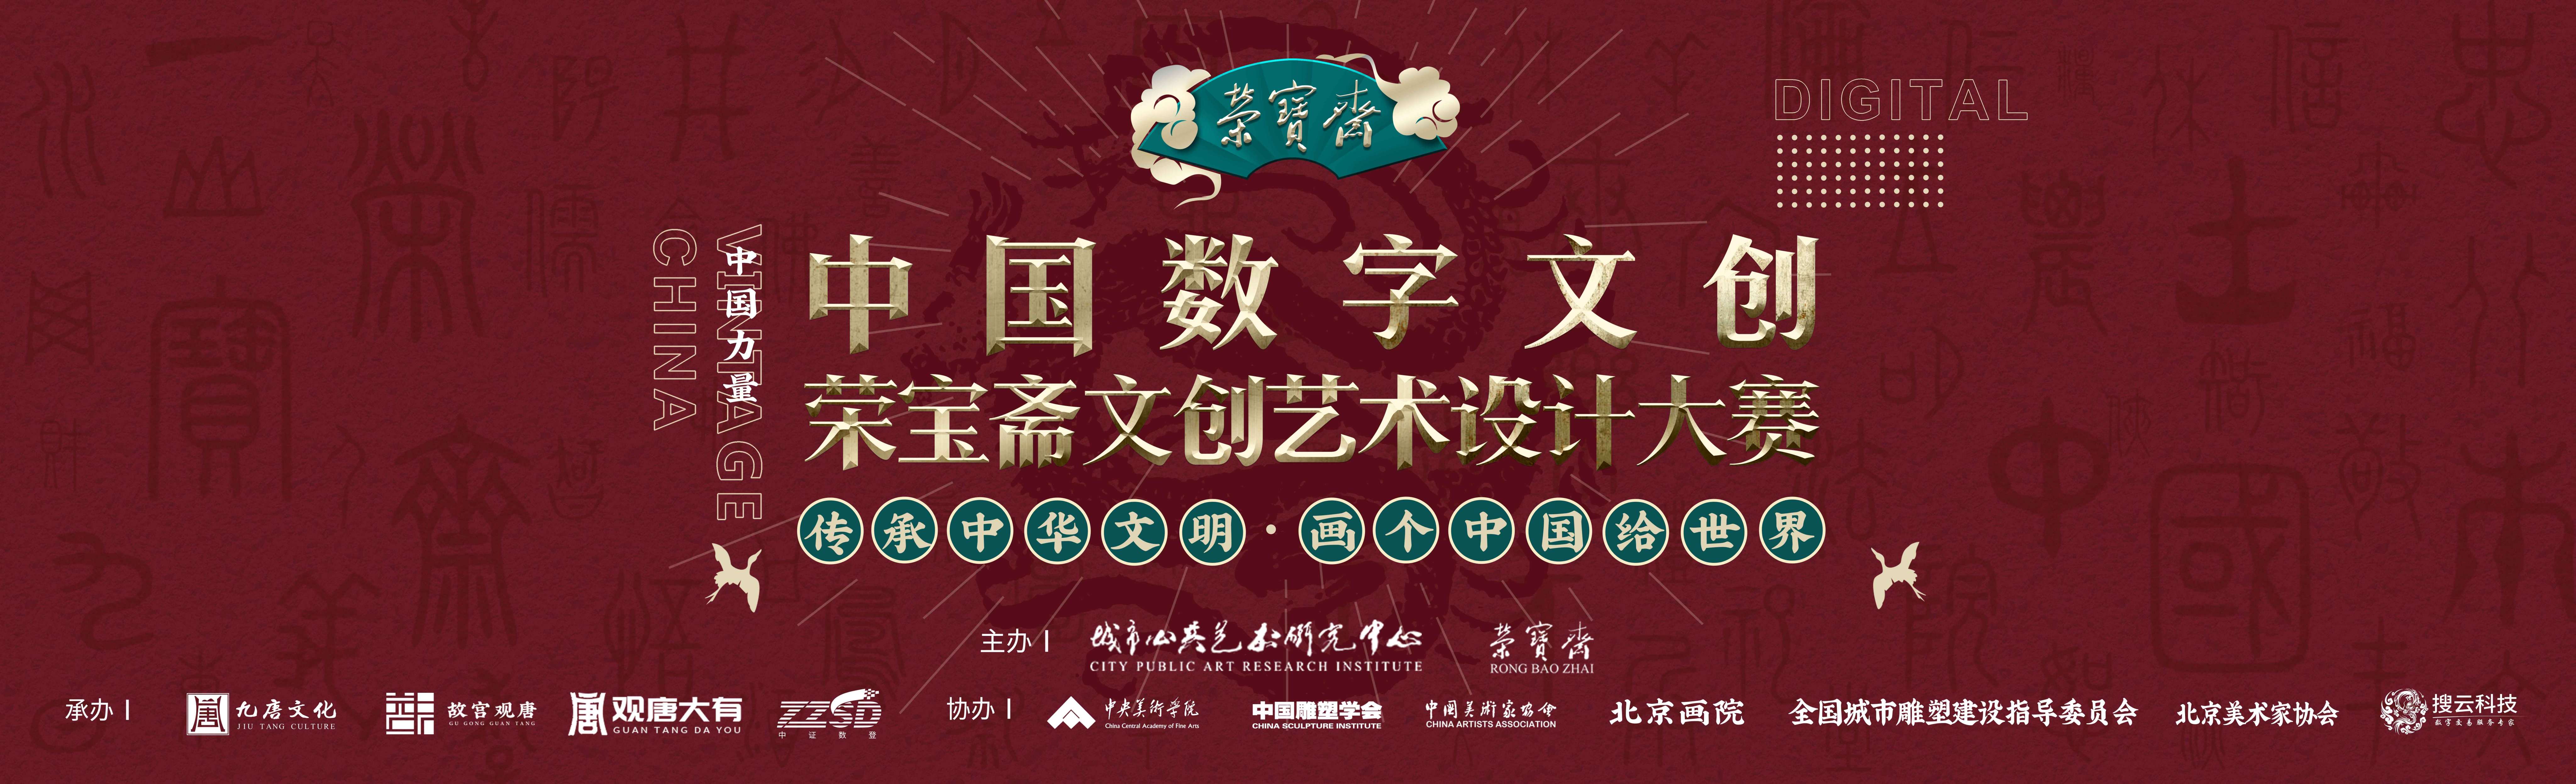 中国数字文创设计大赛即将启动，用创意彰显中国文化自信